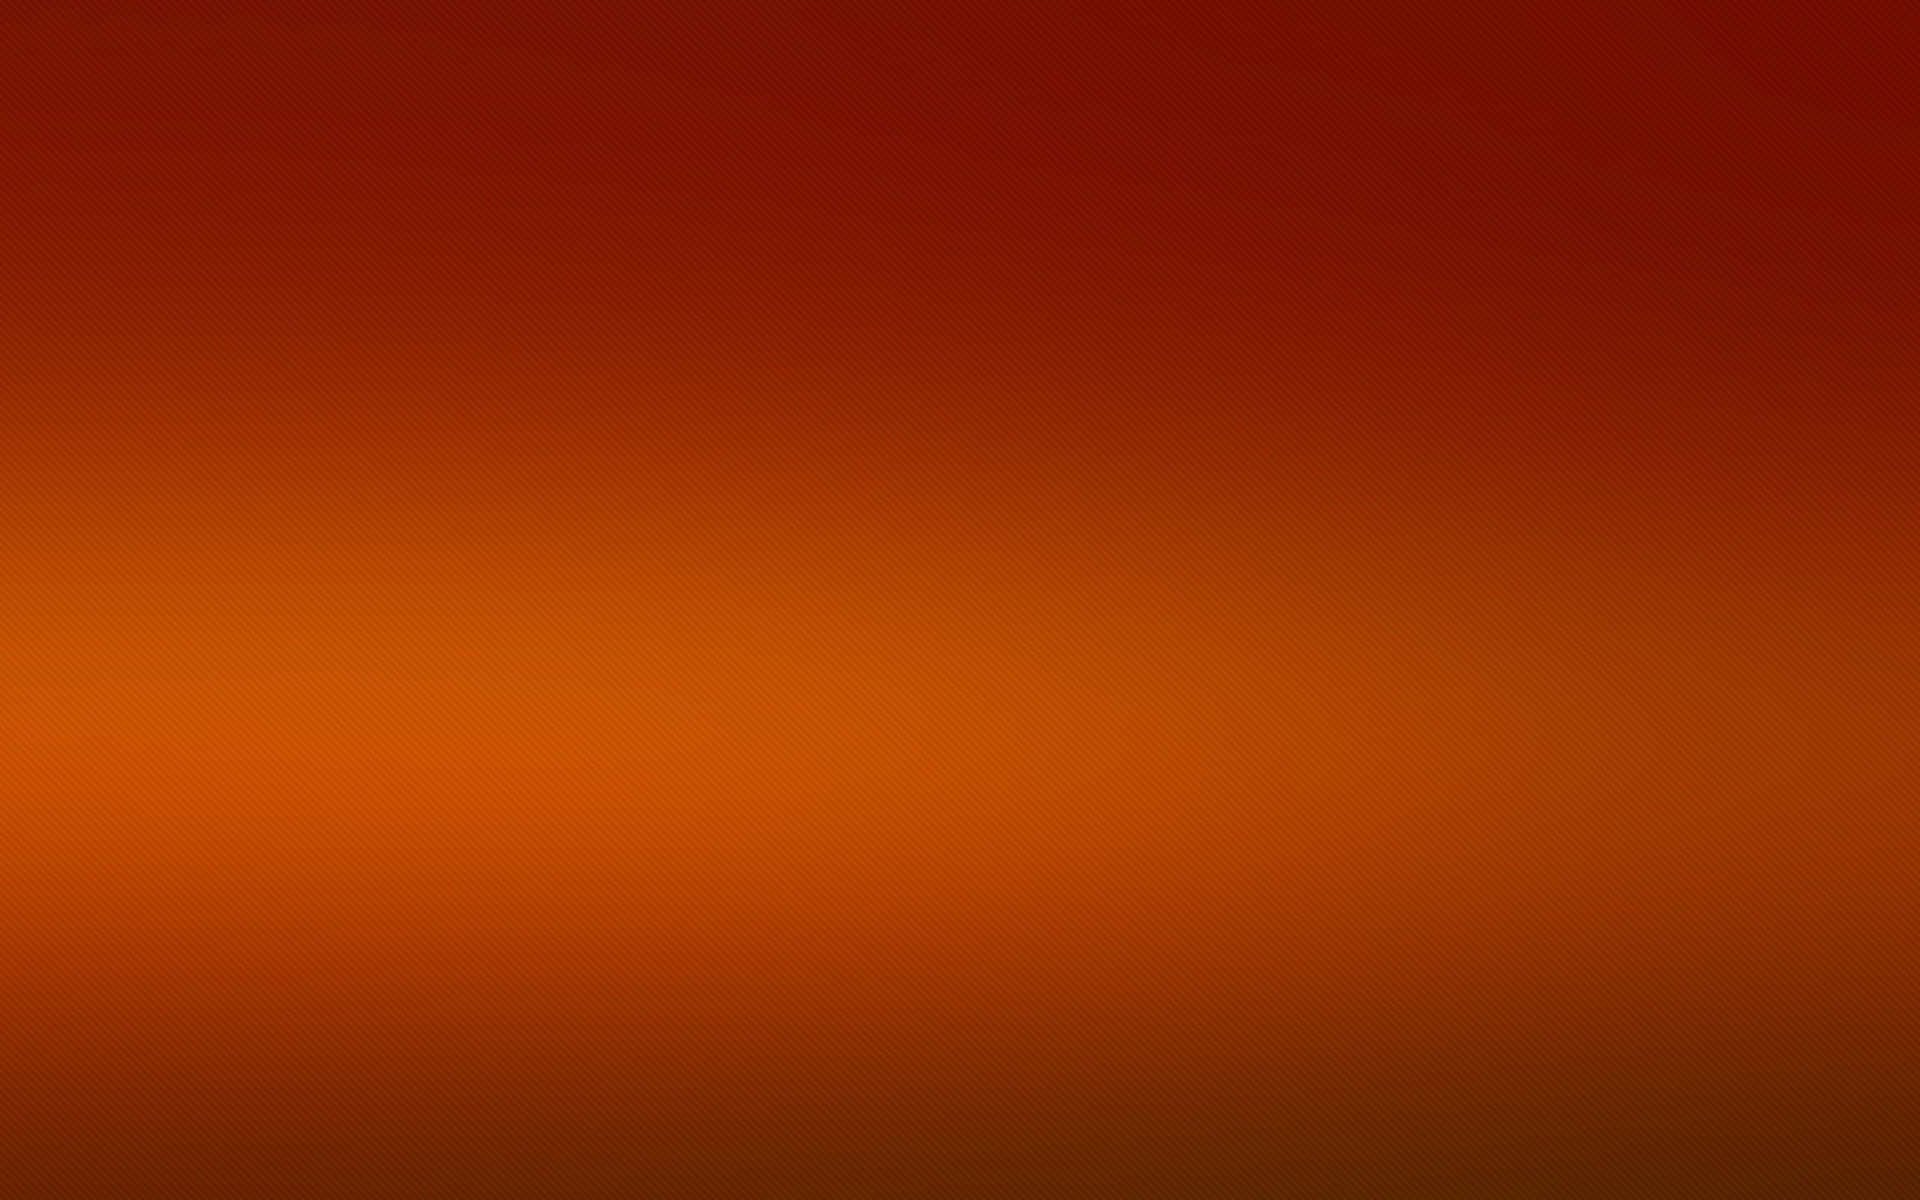 A Warm Orb of Dark Orange